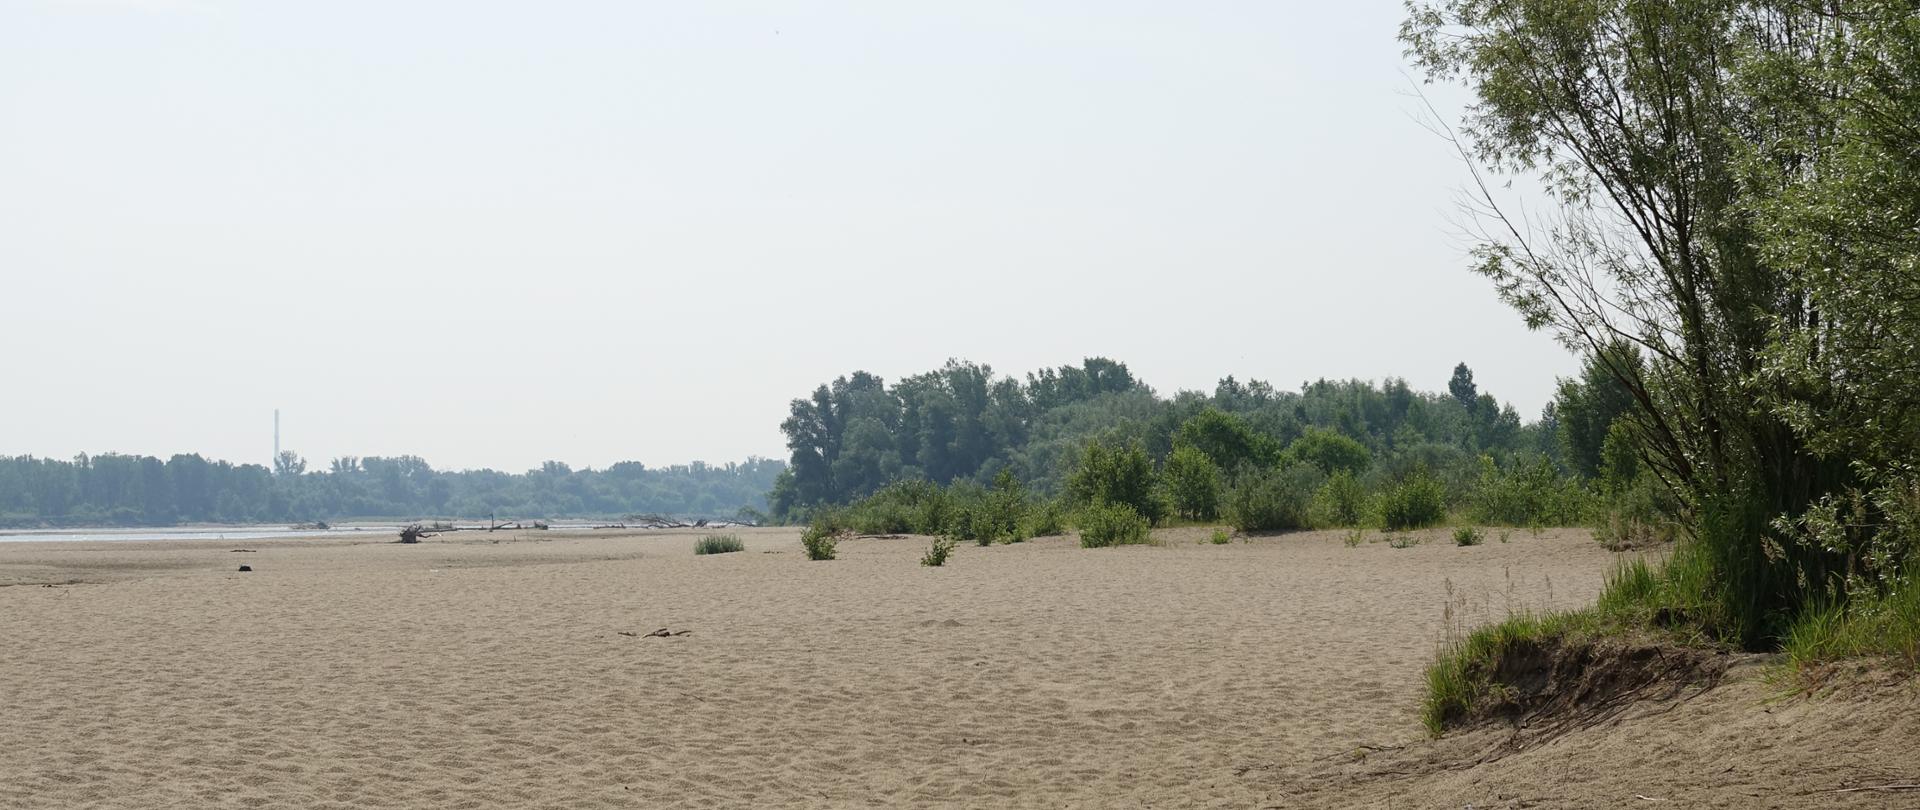 Plaża, w oddali widać fragment rzeki , po prawej stronie zadrzewienia